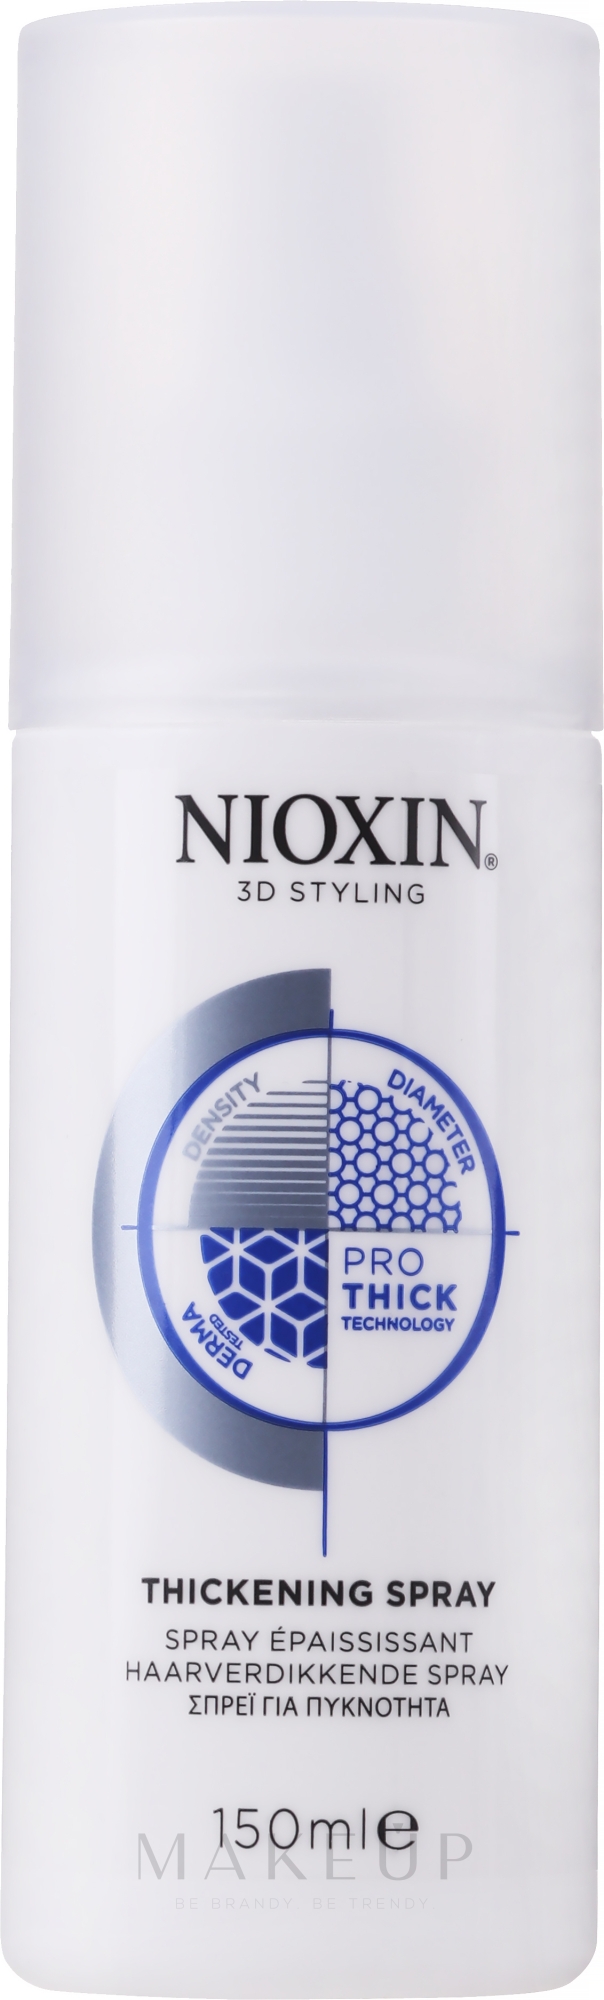 Haarspray für mehr Volumen - Nioxin 3D Styling Thickening Spray — Foto 150 ml